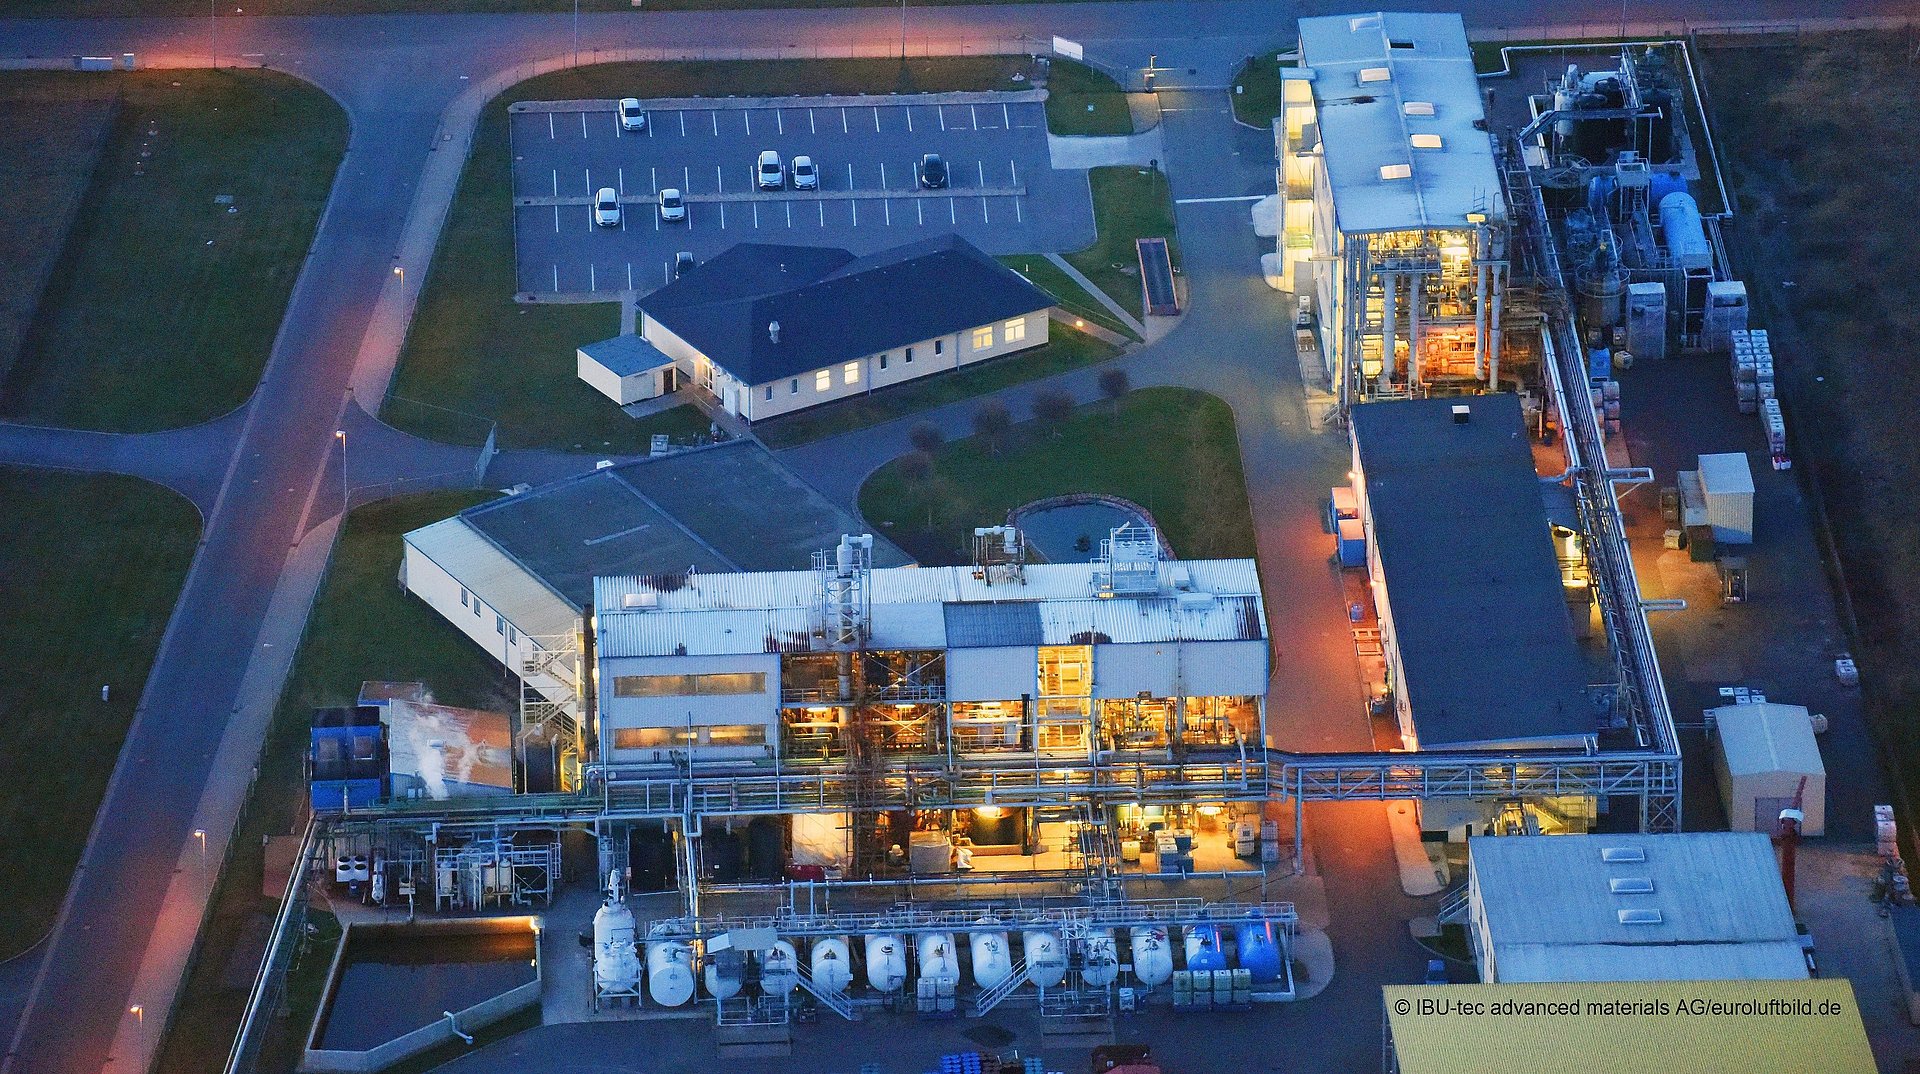 BNT Chemicals der IBU-tec im Chemiepark Bitterfel-Wolfen, Luftbild